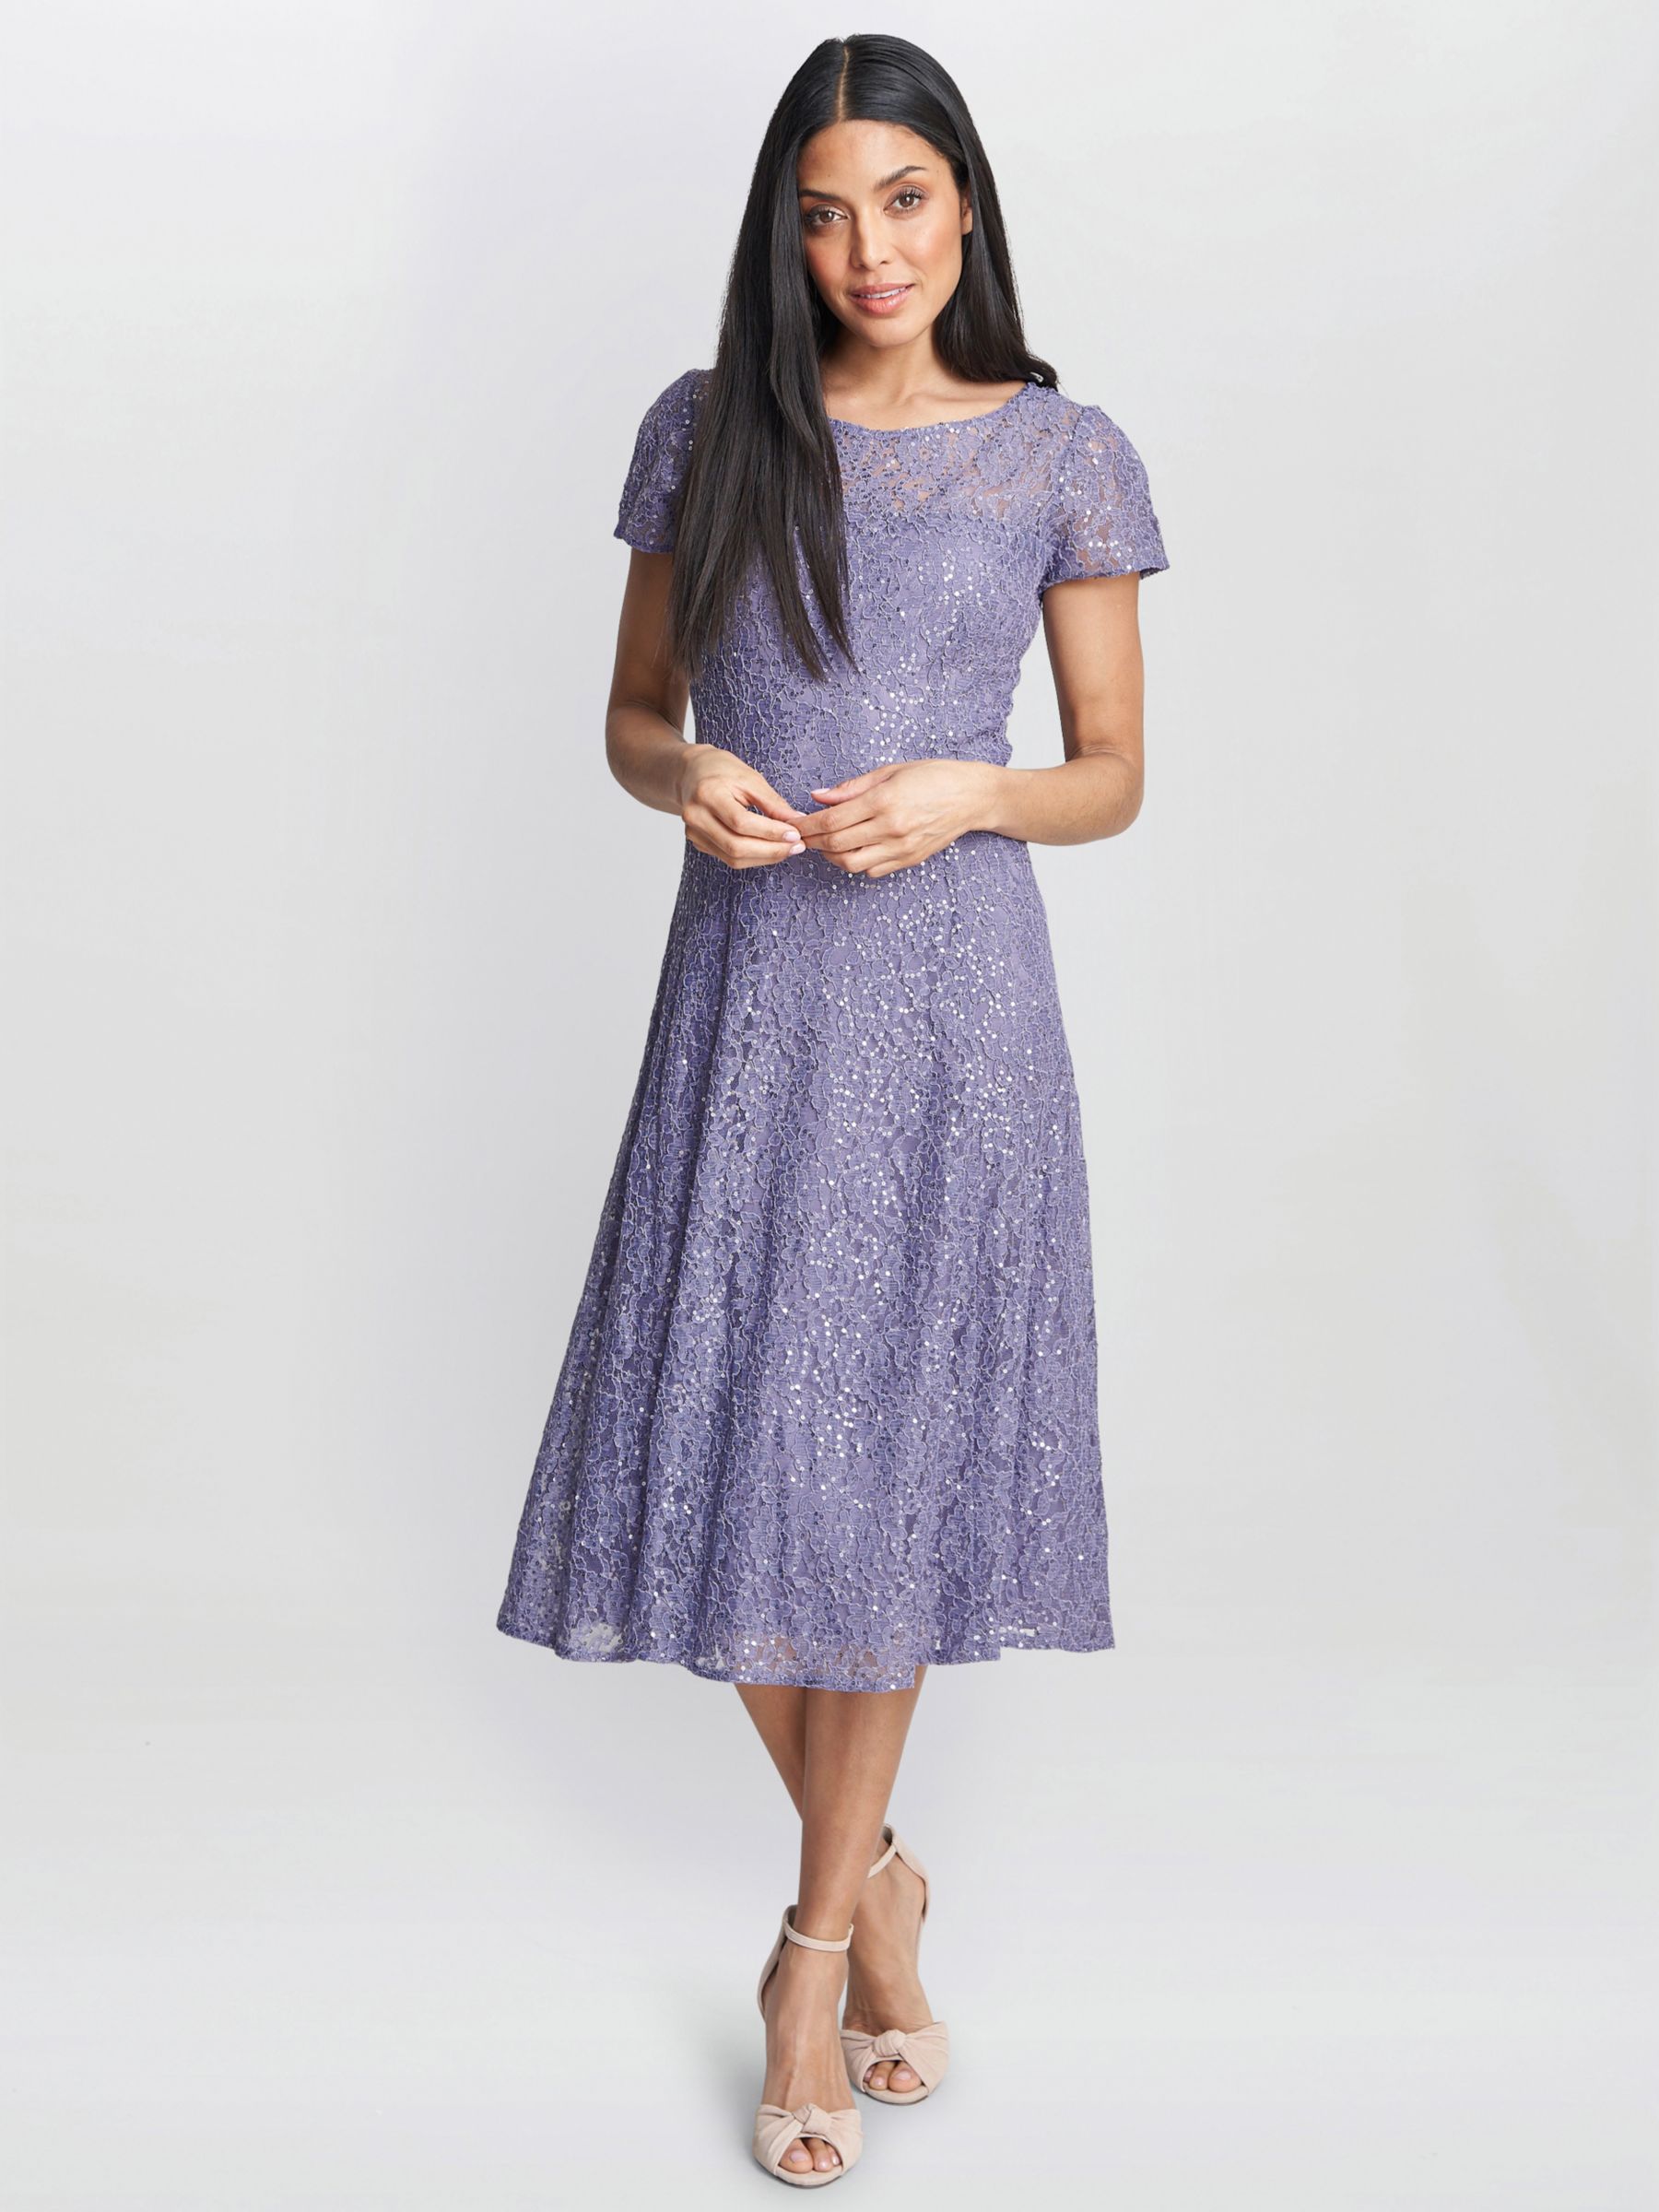 Gina Bacconi Genny Sequin A-Line Midi Dress, Lilac, 10